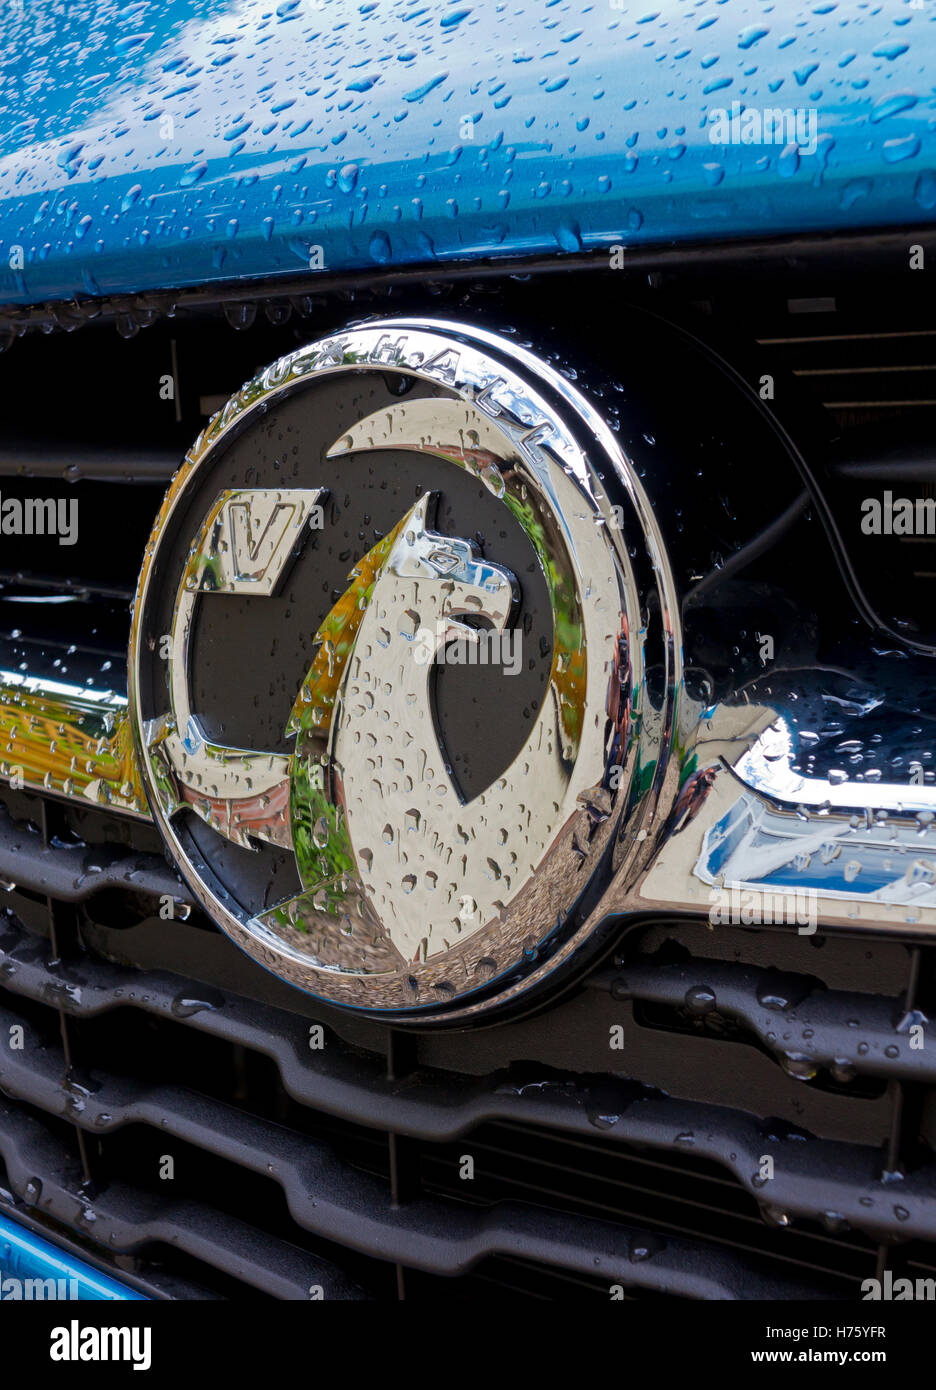 Vue rapprochée de bleu métal modèle 2016 voiture Audi avec des gouttes d'eau sur le corps et sur le logo de calandre Banque D'Images